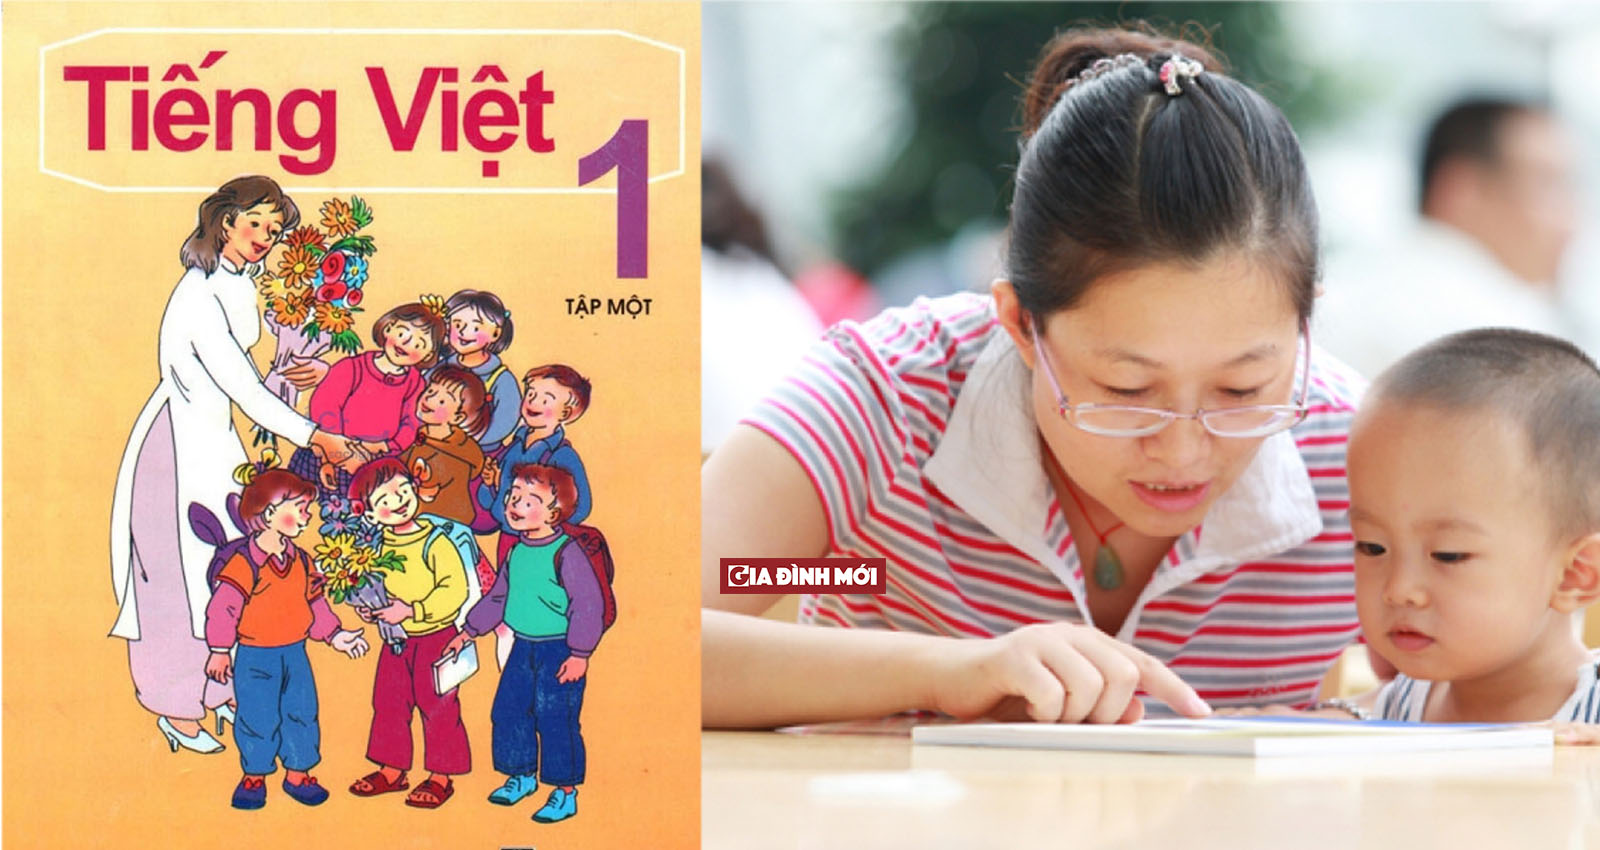   Cách đánh vần Tiếng Việt trong sách giáo khoa Tiếng Việt 1 đang được áp dụng rộng rãi  